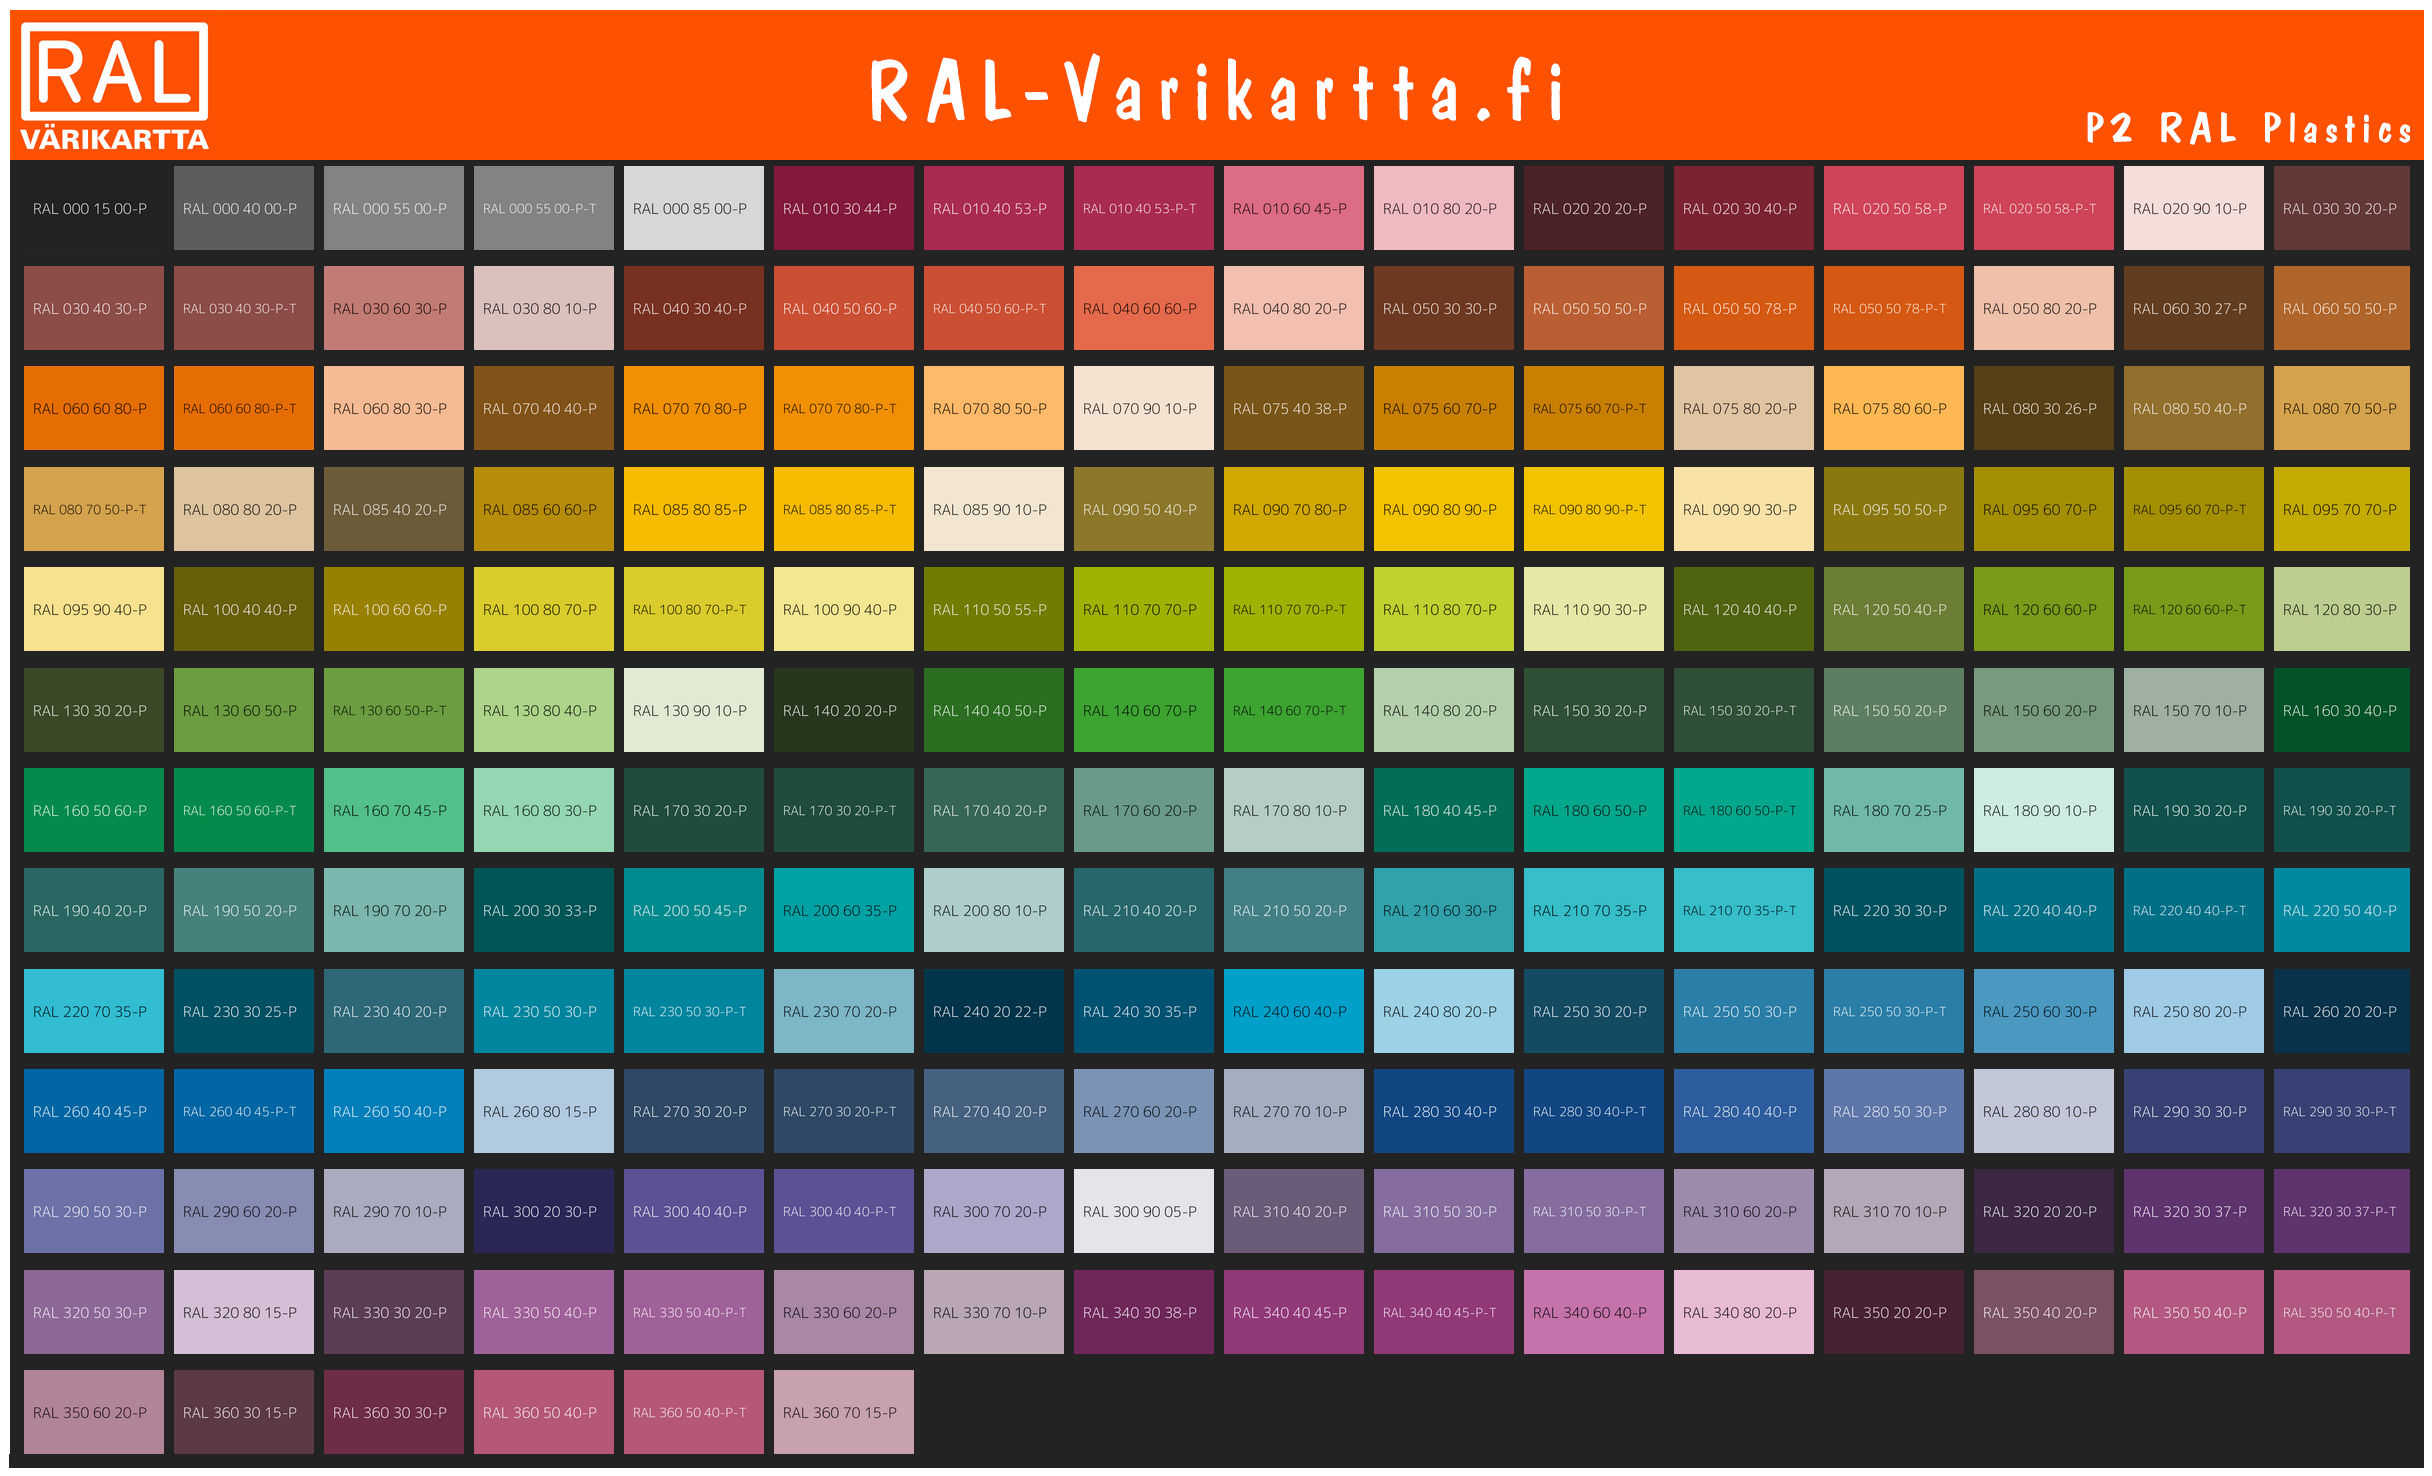 P2 RAL Plastics värikartta fi